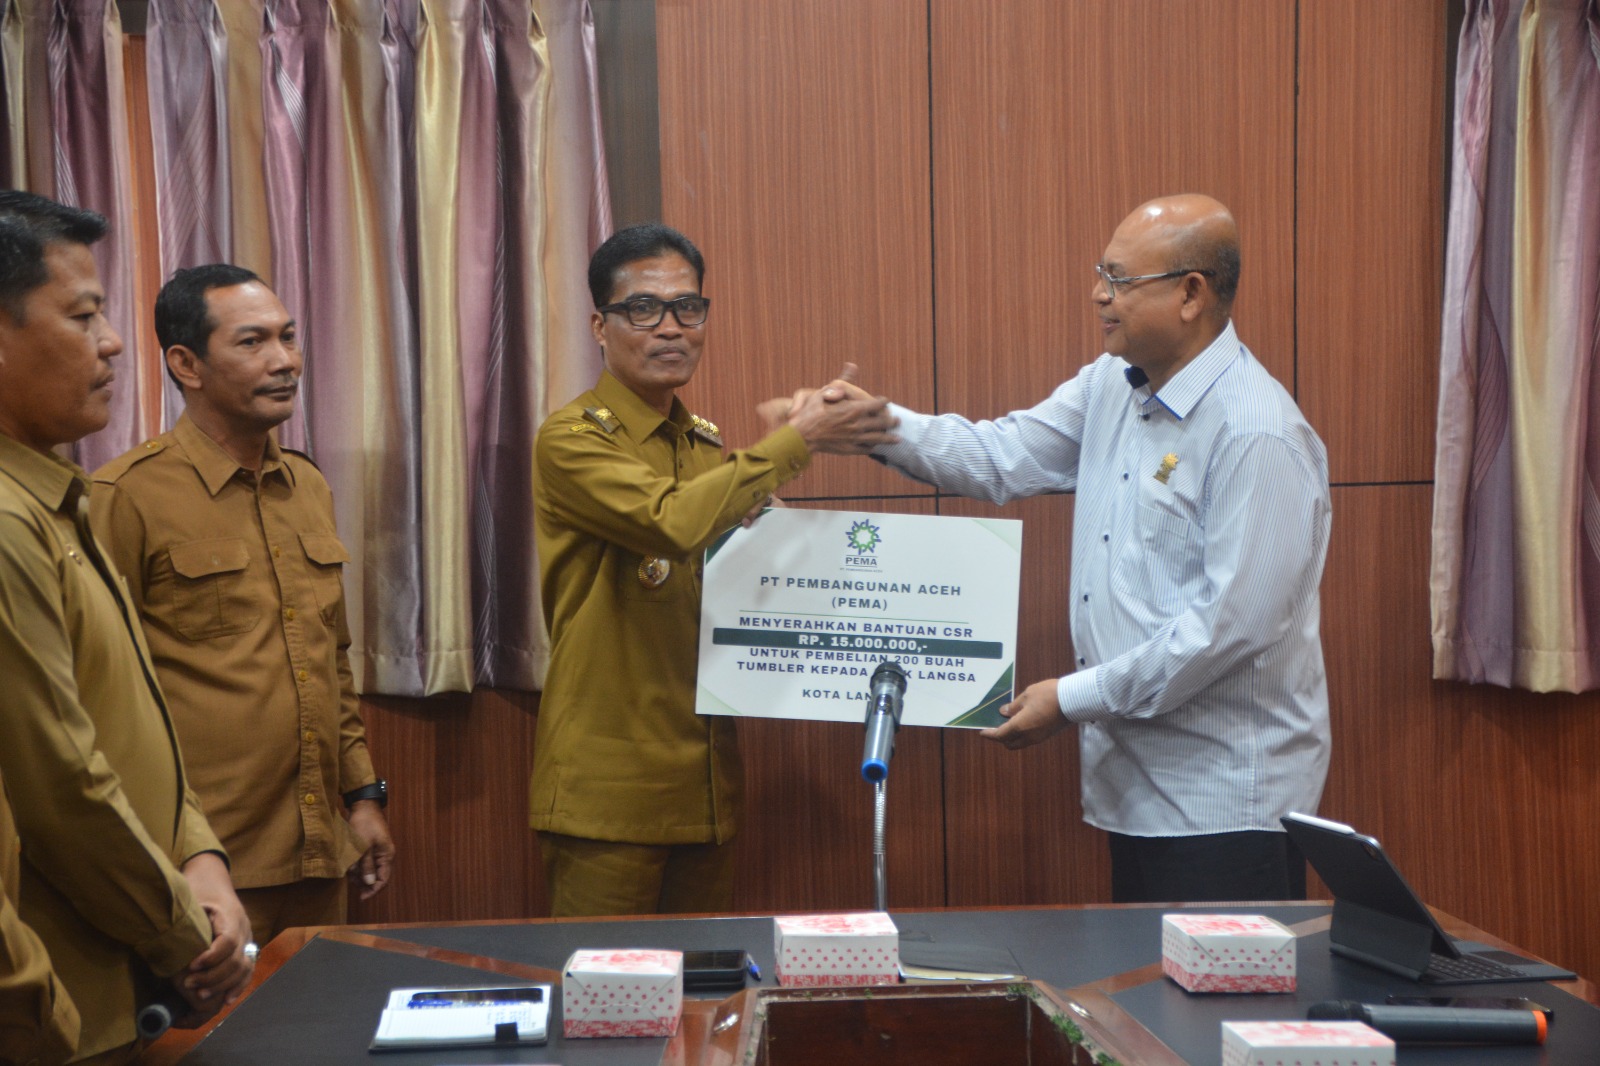 Pemerintah kota Langsa Akan  menjalin kerjasama daerah dengan PT. Pembangunan Aceh (PEMA) terkait peningkatan pembangunan, perekonomian dan sumber daya alam Aceh.